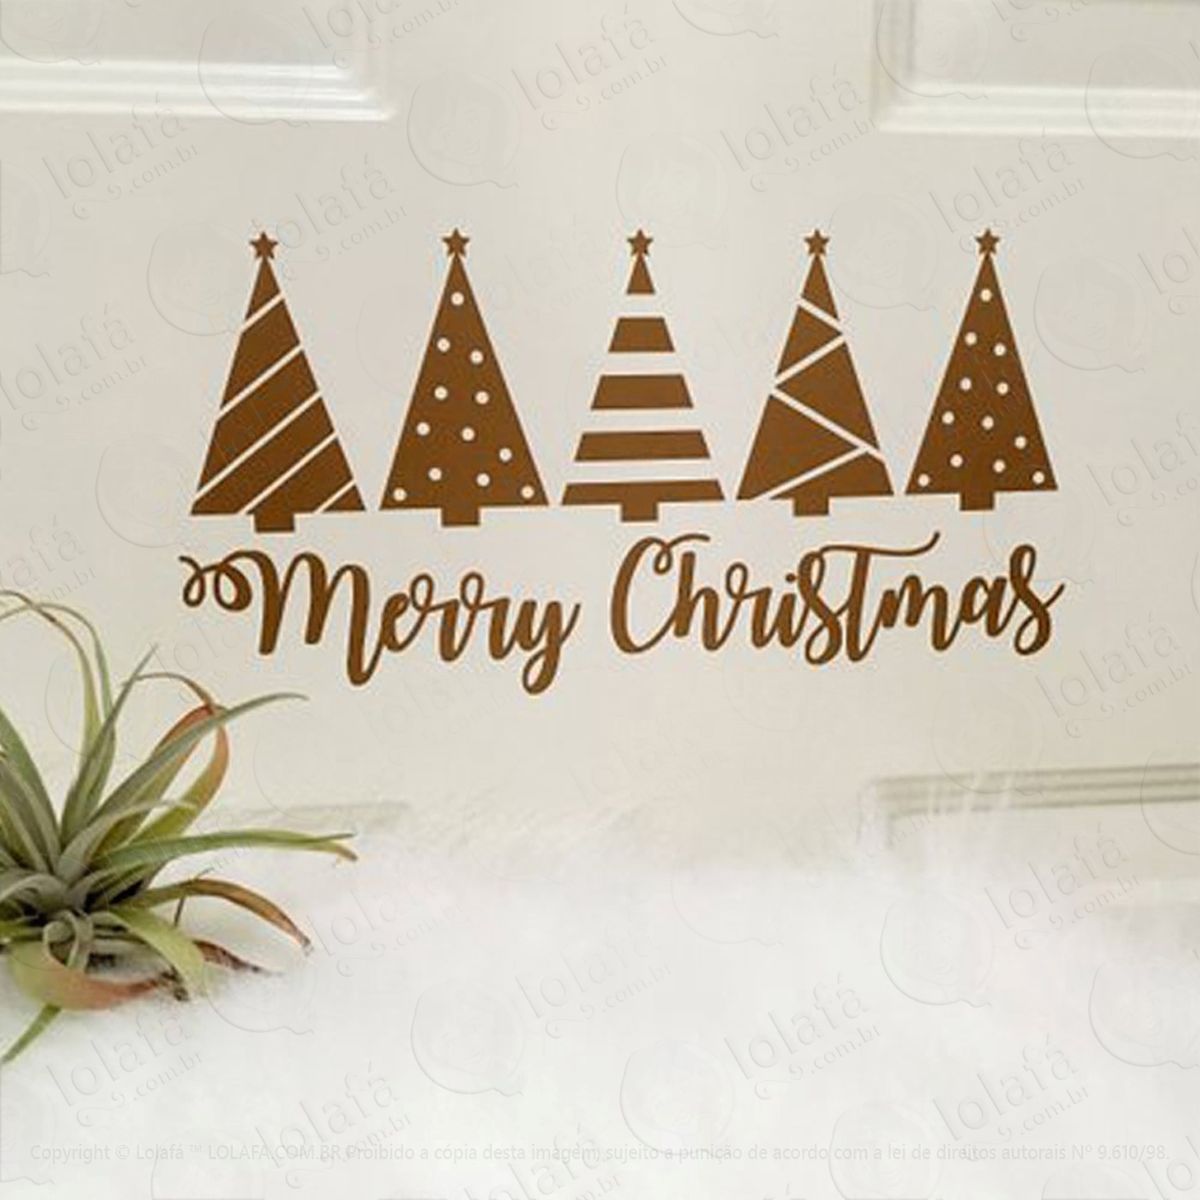 pinheiros adesivo de natal para vitrine, parede, porta de vidro - decoração natalina mod:193